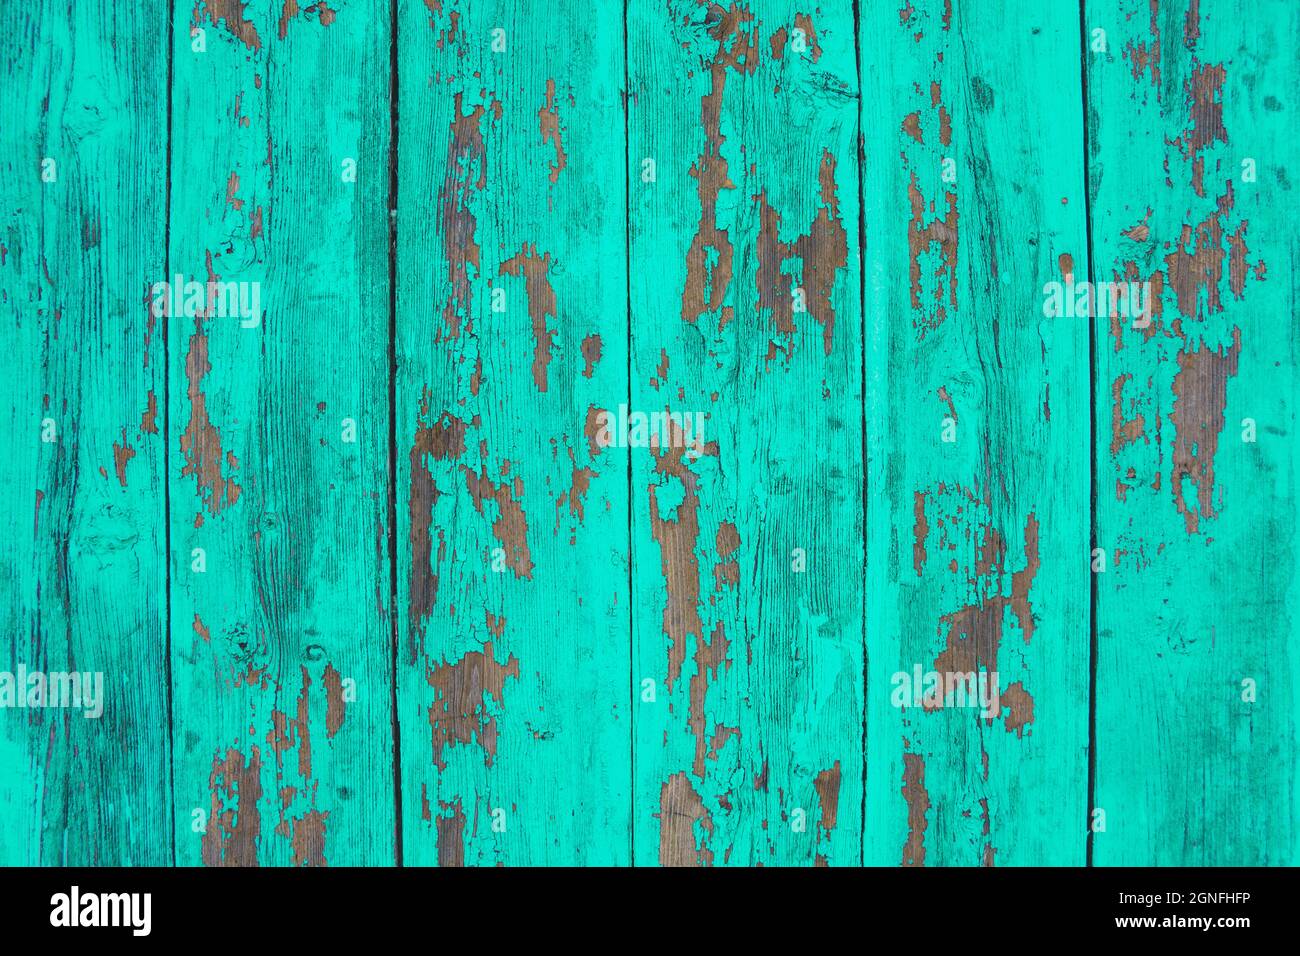 sfondo con texture in legno blu, vista dall'alto pannello in legno, vernice da peeling sul legno Foto Stock